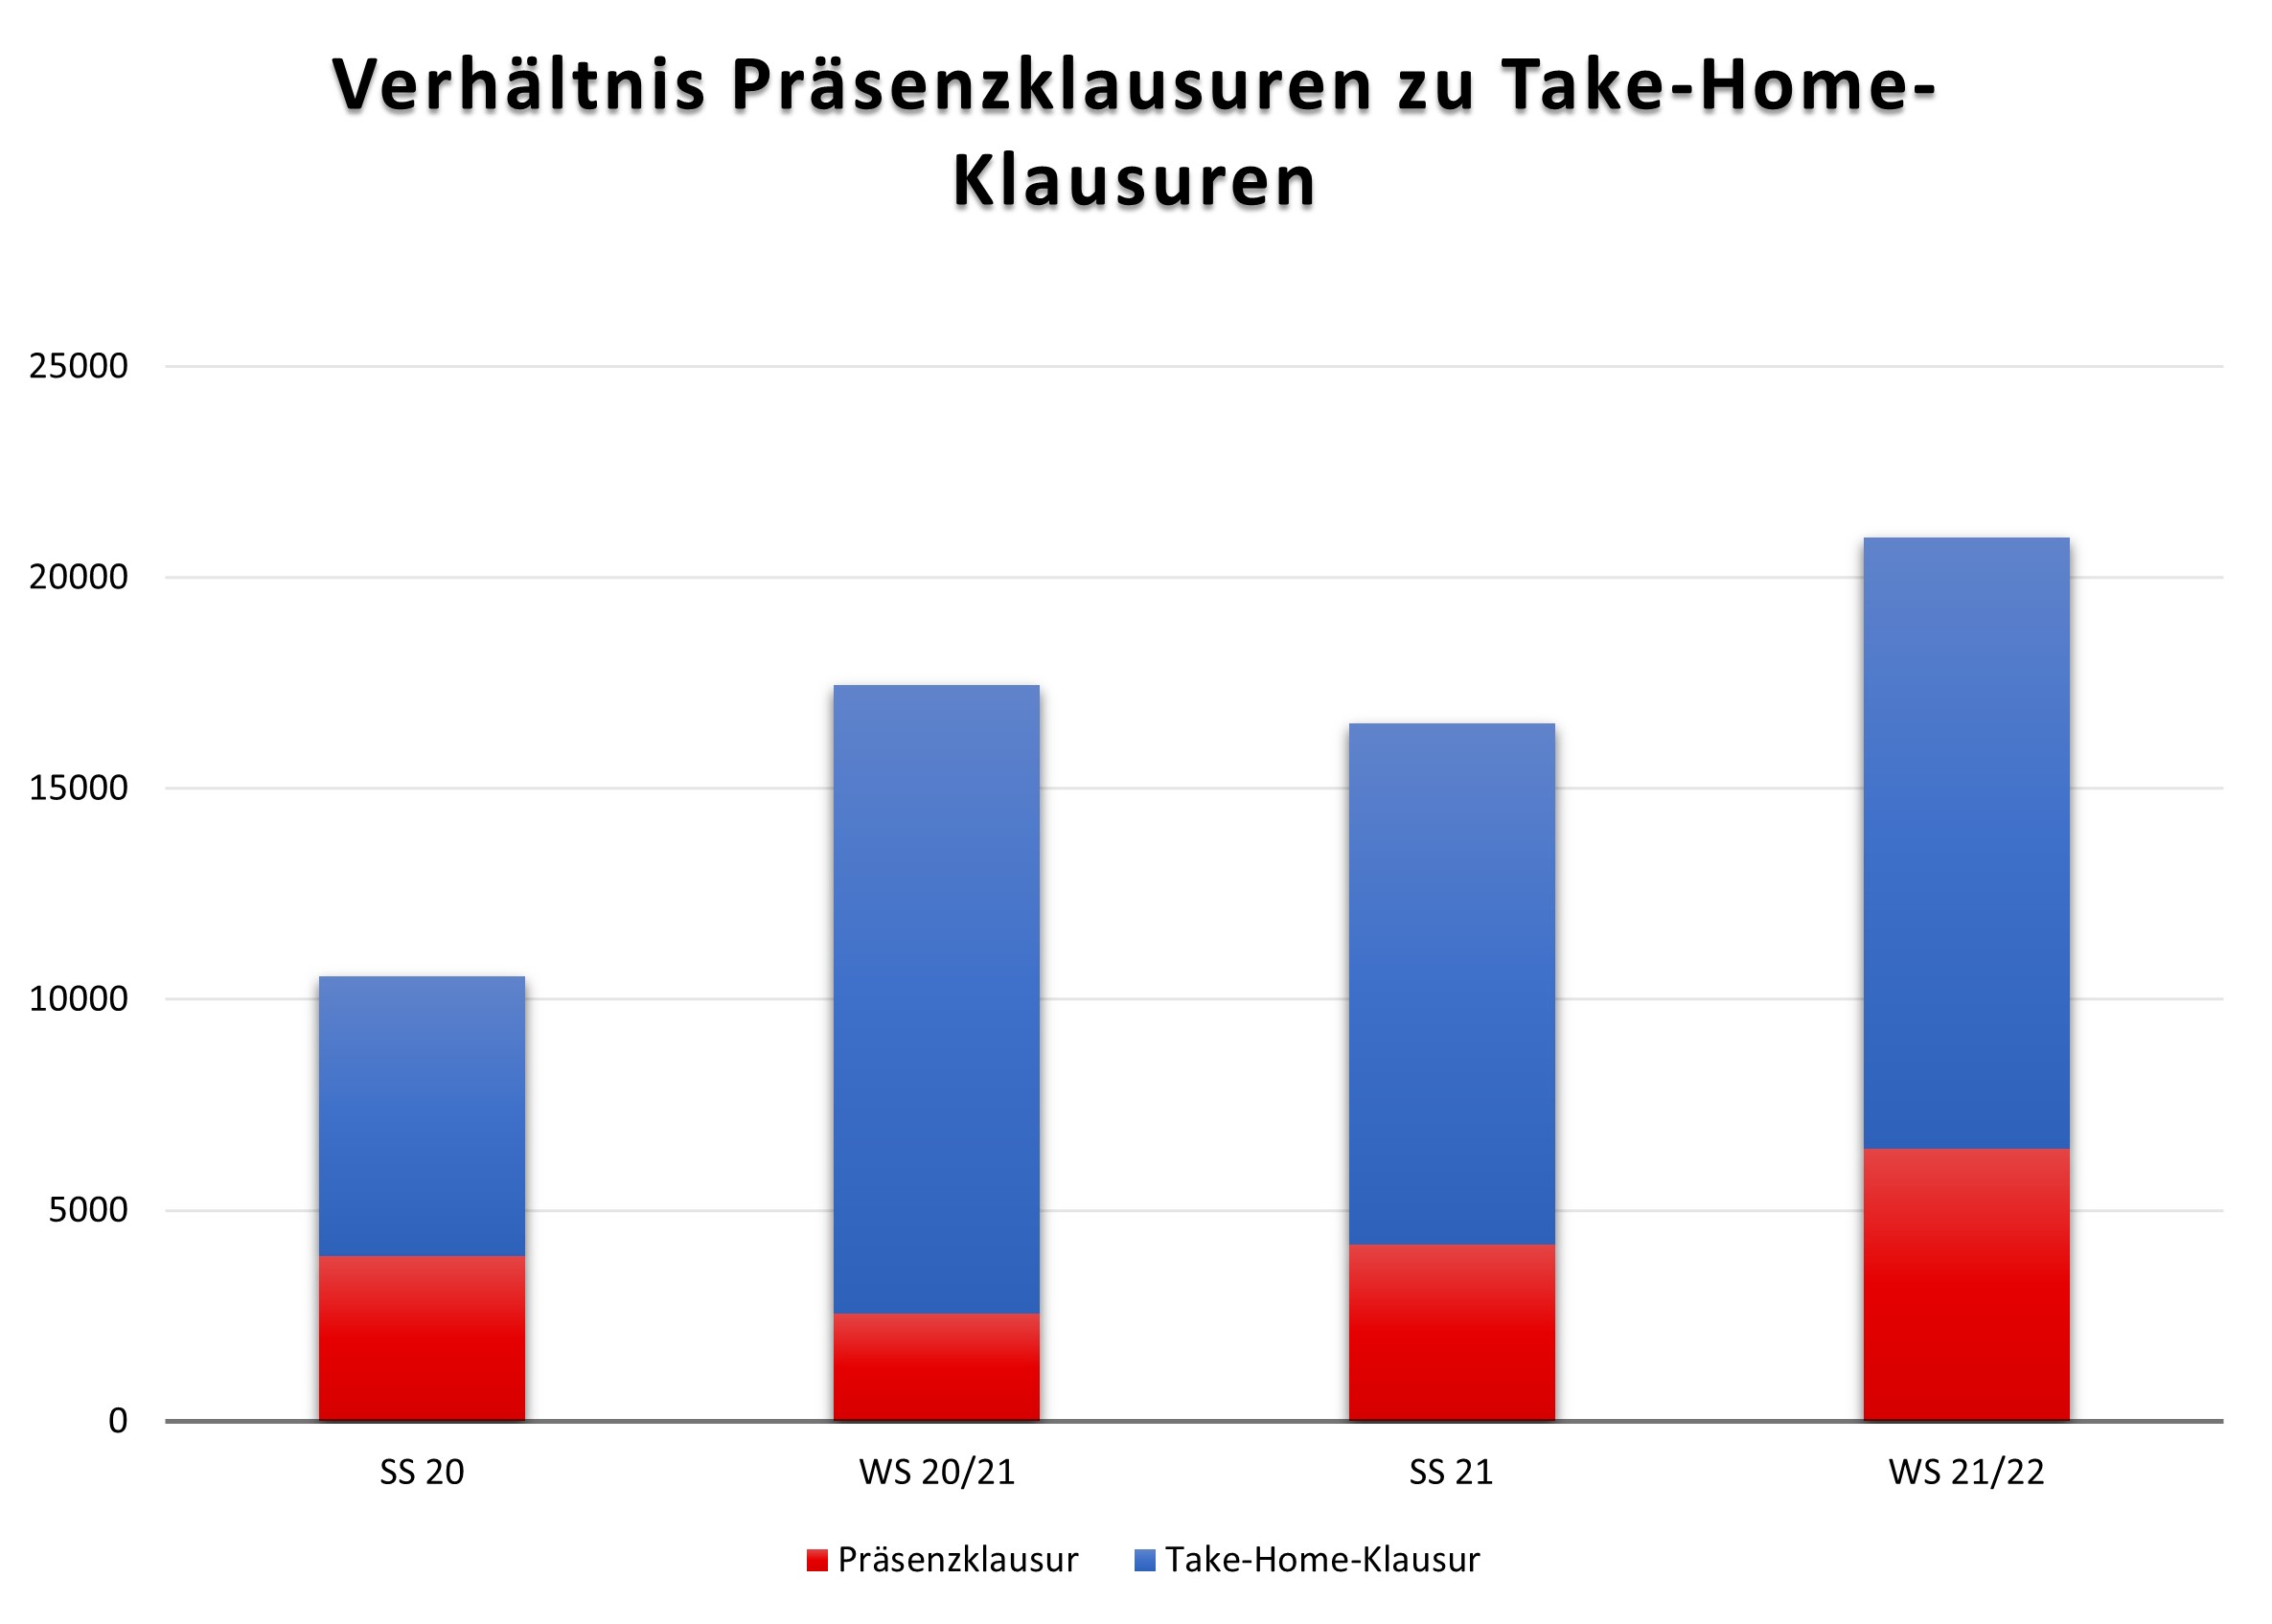 Anzahl Take-Home-Klausuren vs. Präsenzklausuren